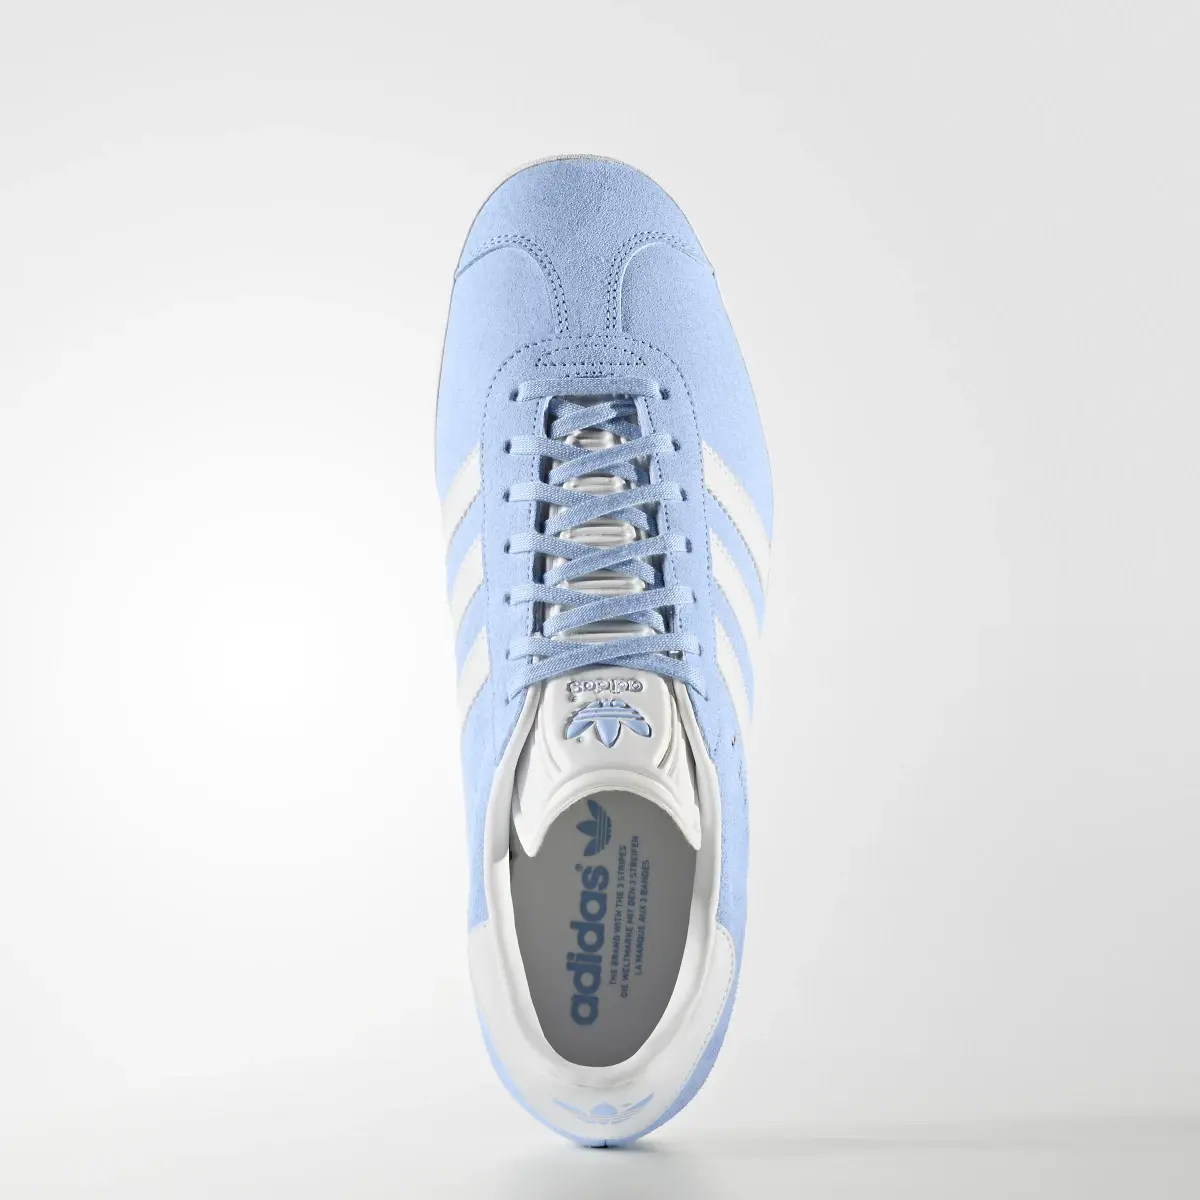 Adidas Gazelle Shoes. 2